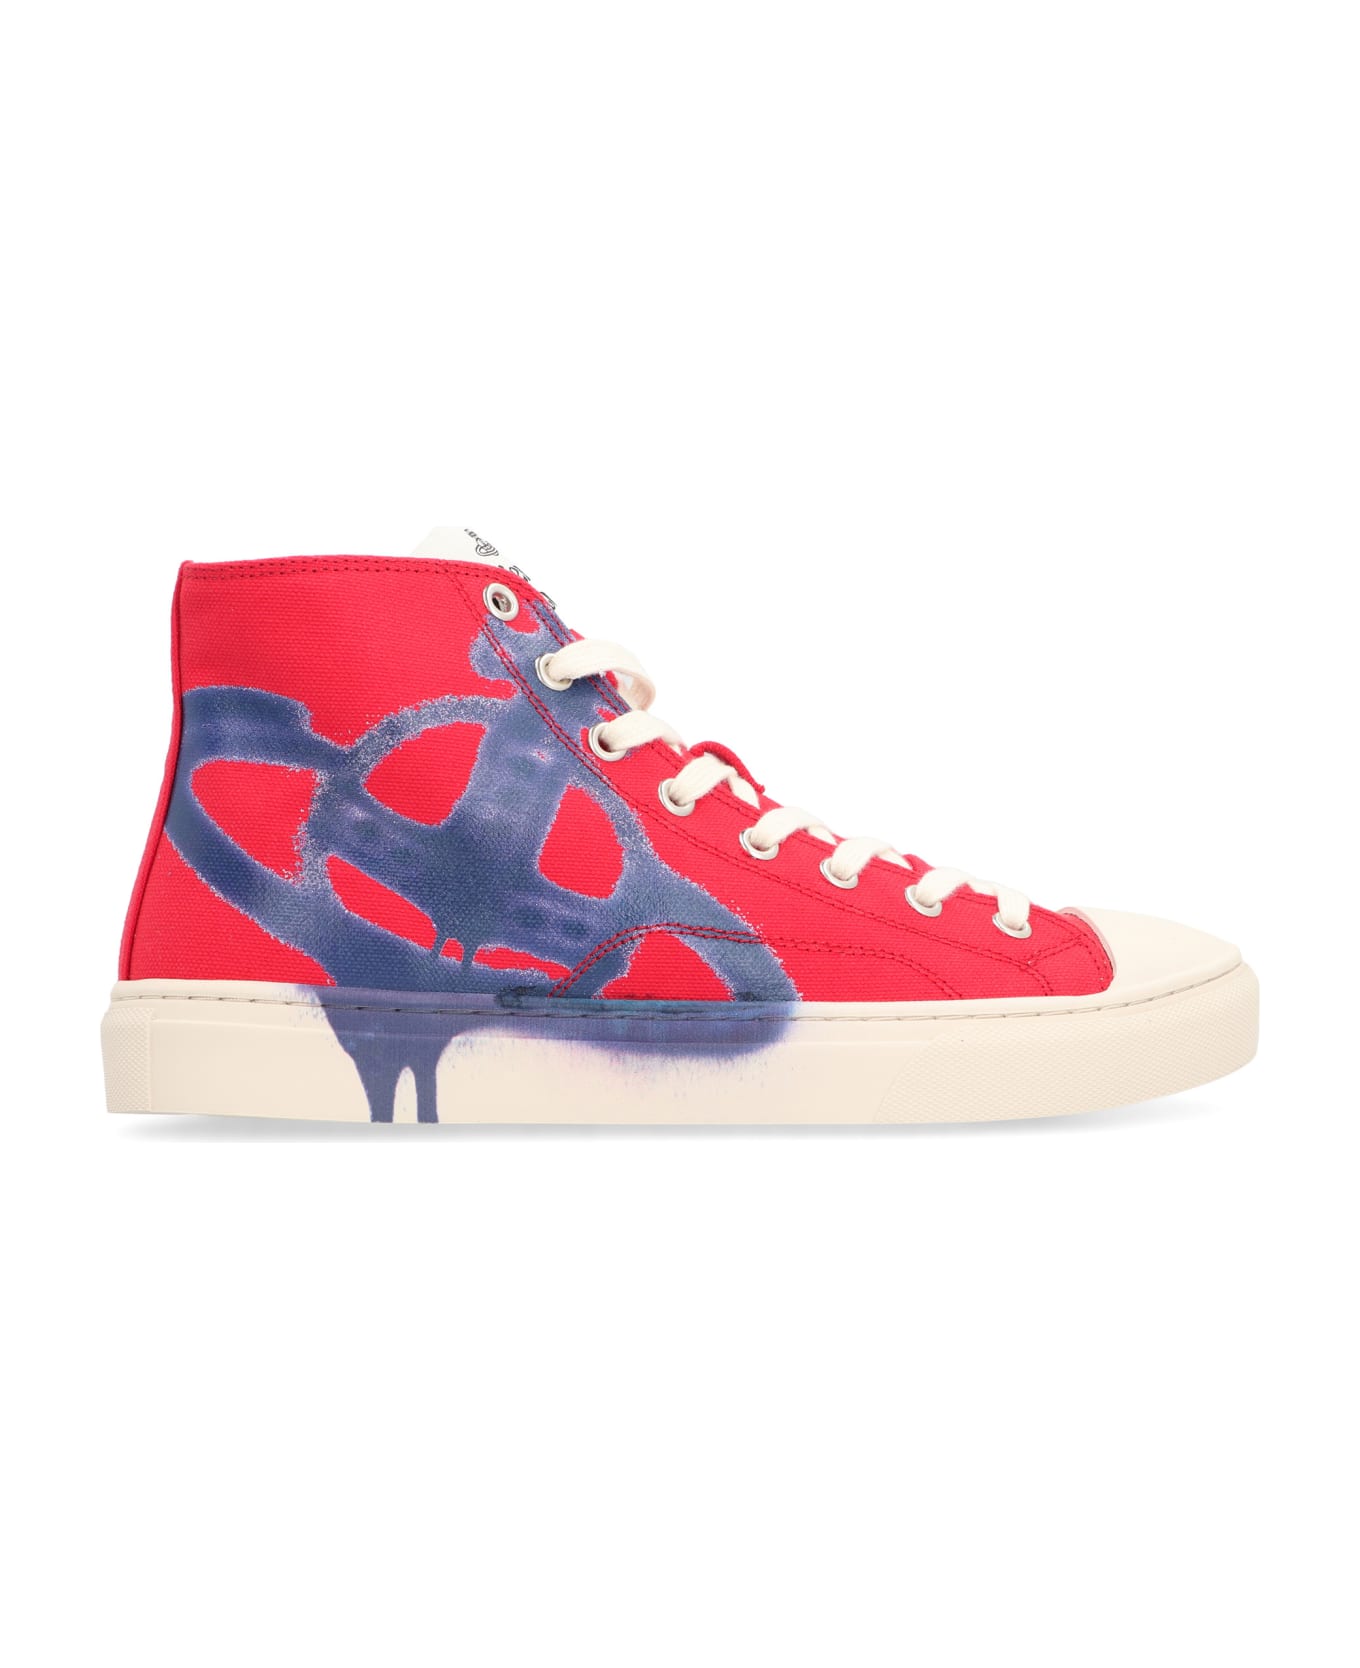 Vivienne Westwood Plimsoll High-top Sneakers - red スニーカー